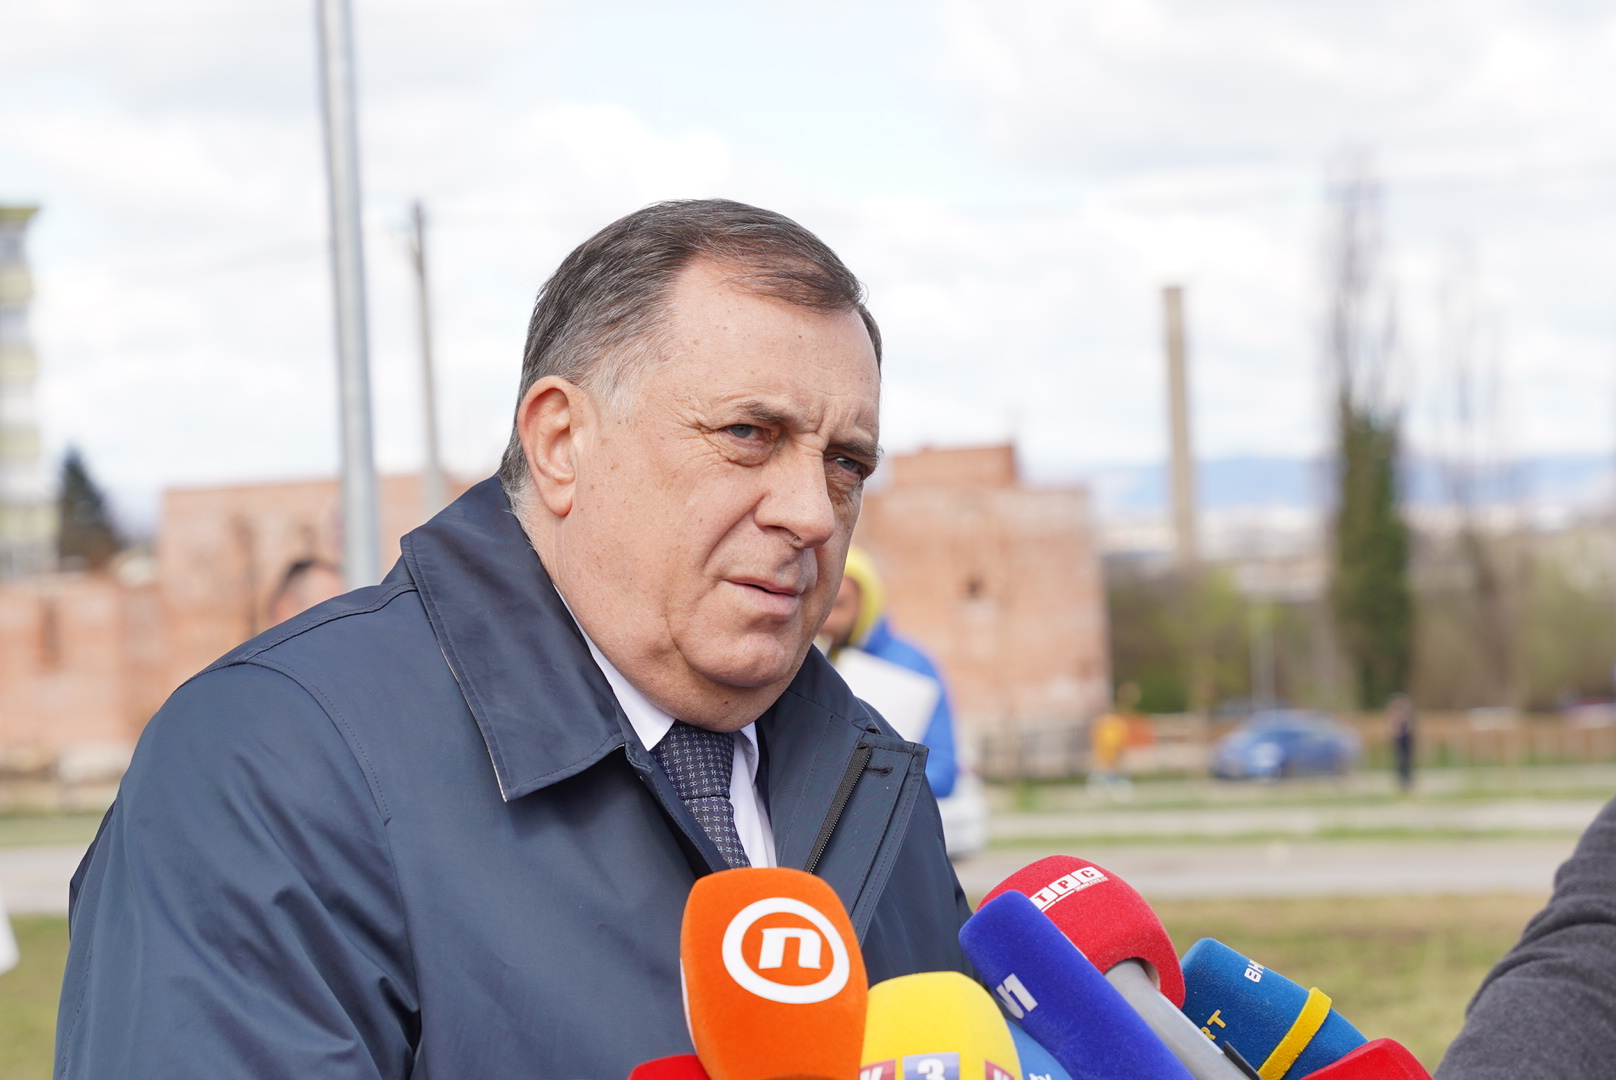 “BOLJE DA NISU DONIRALI NI EVRO” Dodik odgovorio Ambasadi SAD u BiH (FOTO)